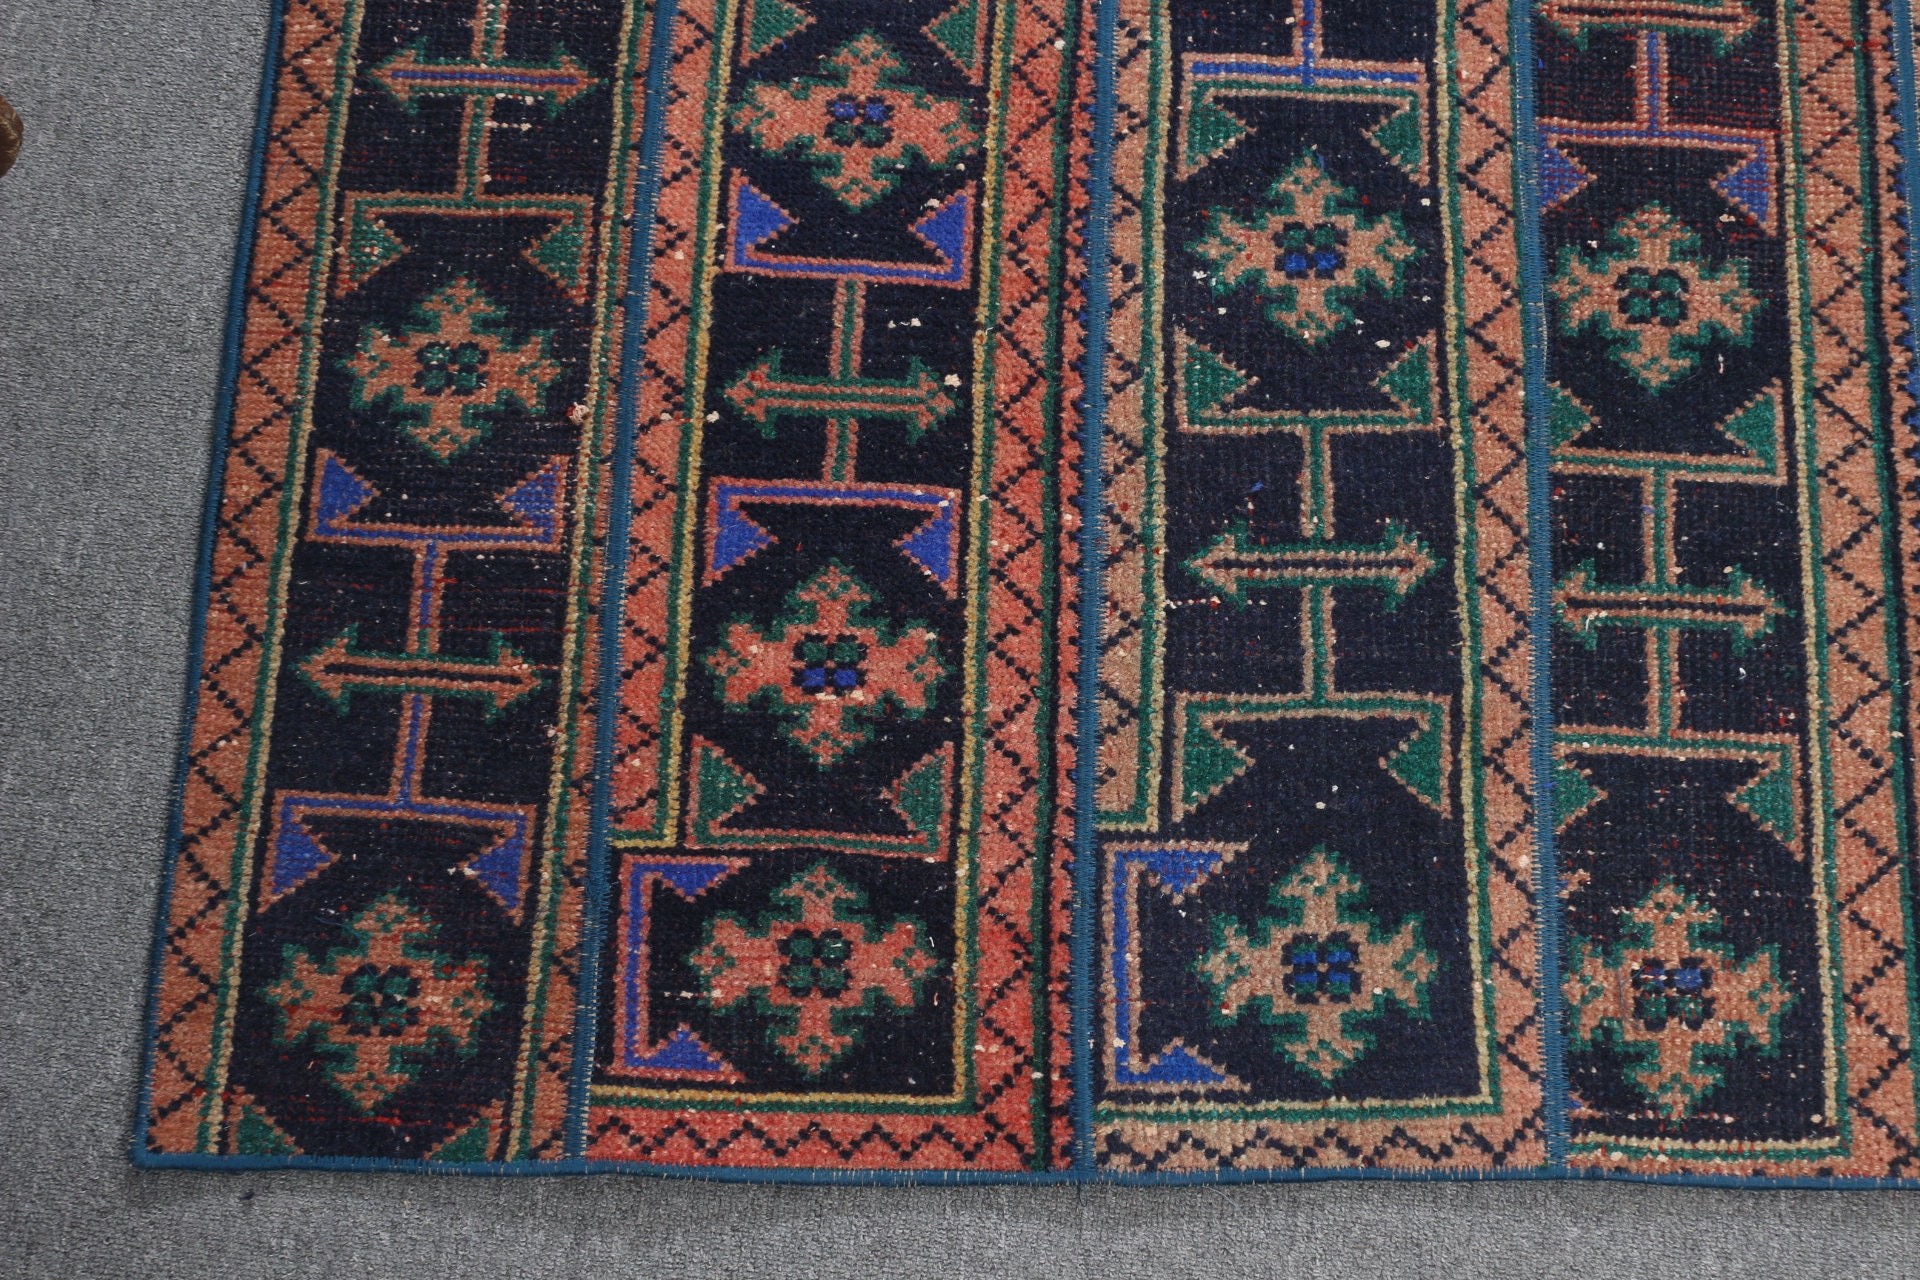 Indoor Rugs, Turkish Rugs, Antique Rug, Oriental Rugs, Dining Room Rug, Rugs for Floor, 4.6x5.4 ft Area Rug, Blue Cool Rugs, Vintage Rug